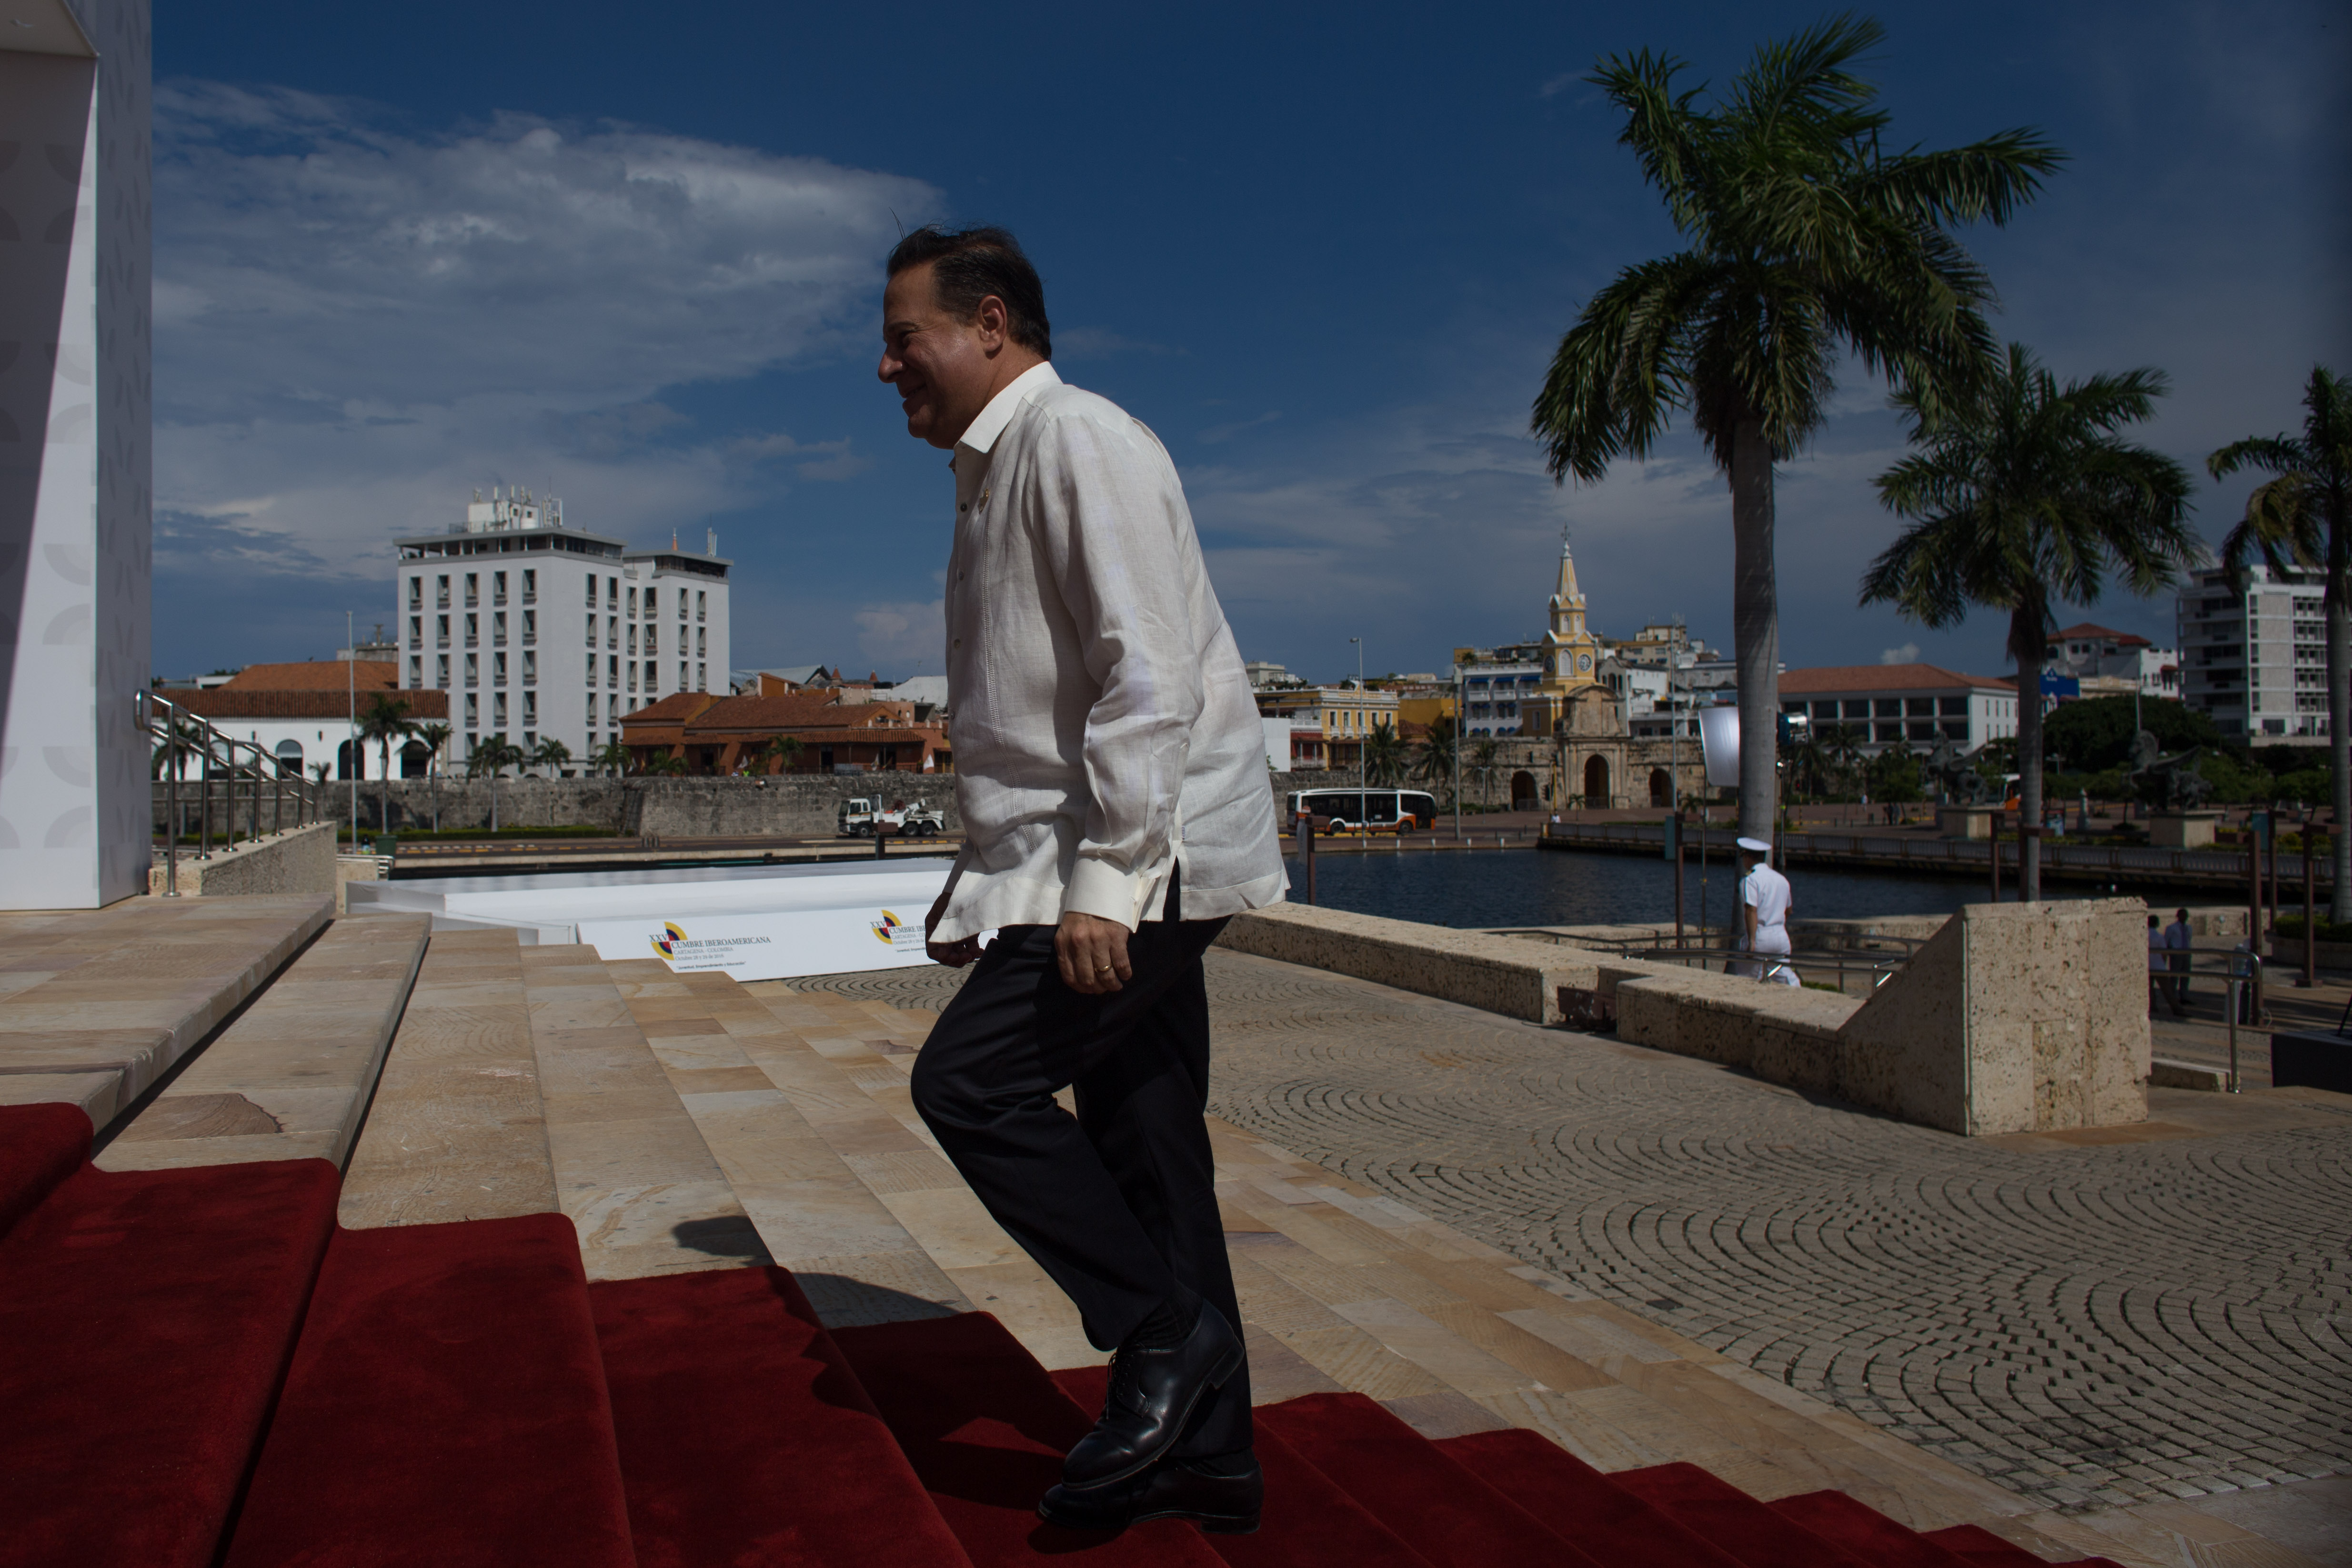 Al Centro de Convenciones de Cartagena llegó el Presidente de Panamá, Juan Carlos Varela, con el fin de participar en el encuentro de Jefes de Estado y de Gobierno que se realiza el 29 de octubre